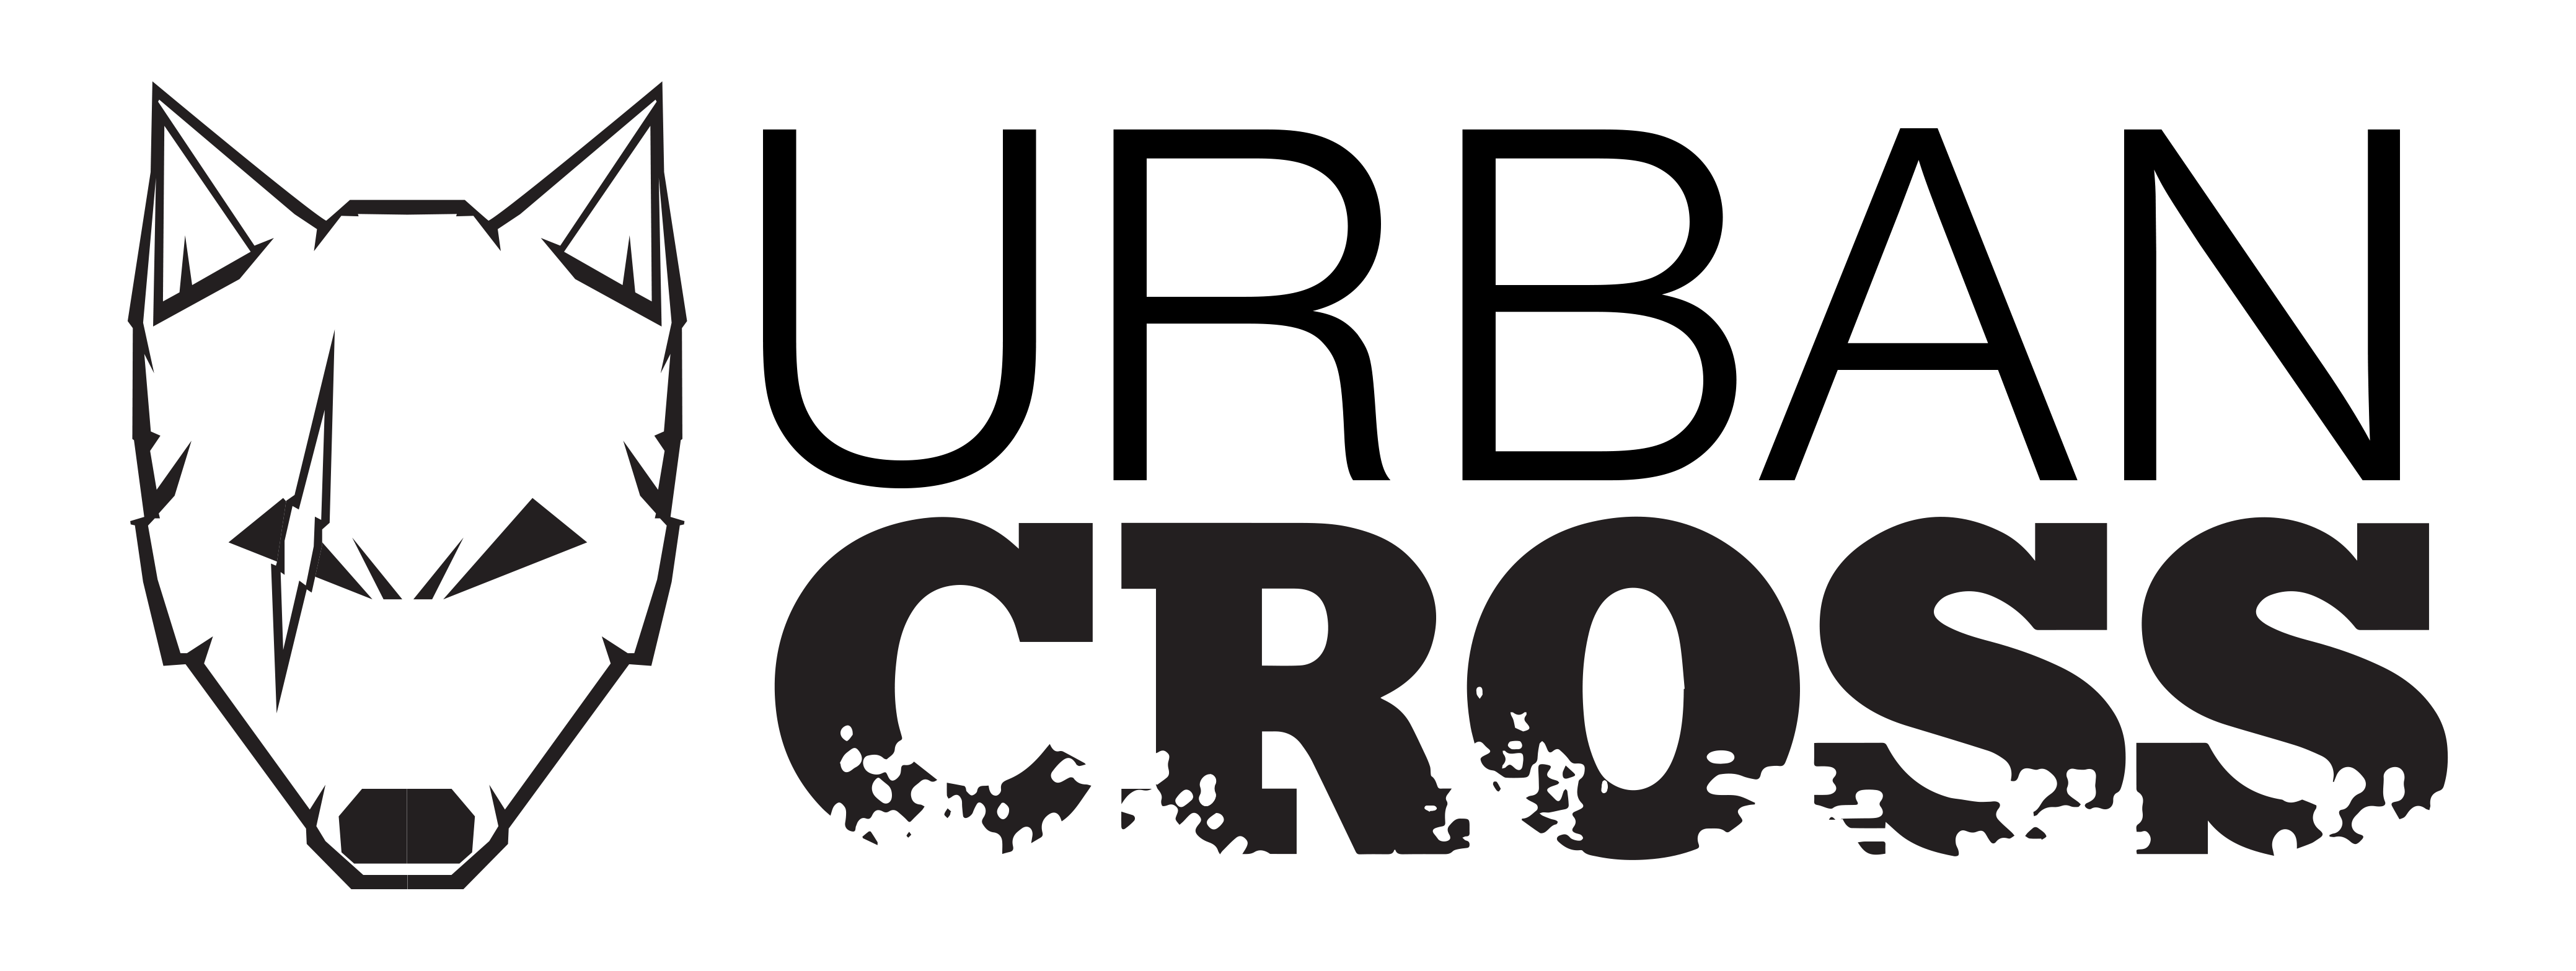 Urban Cross Logo - Urban Cross - Urban Cross